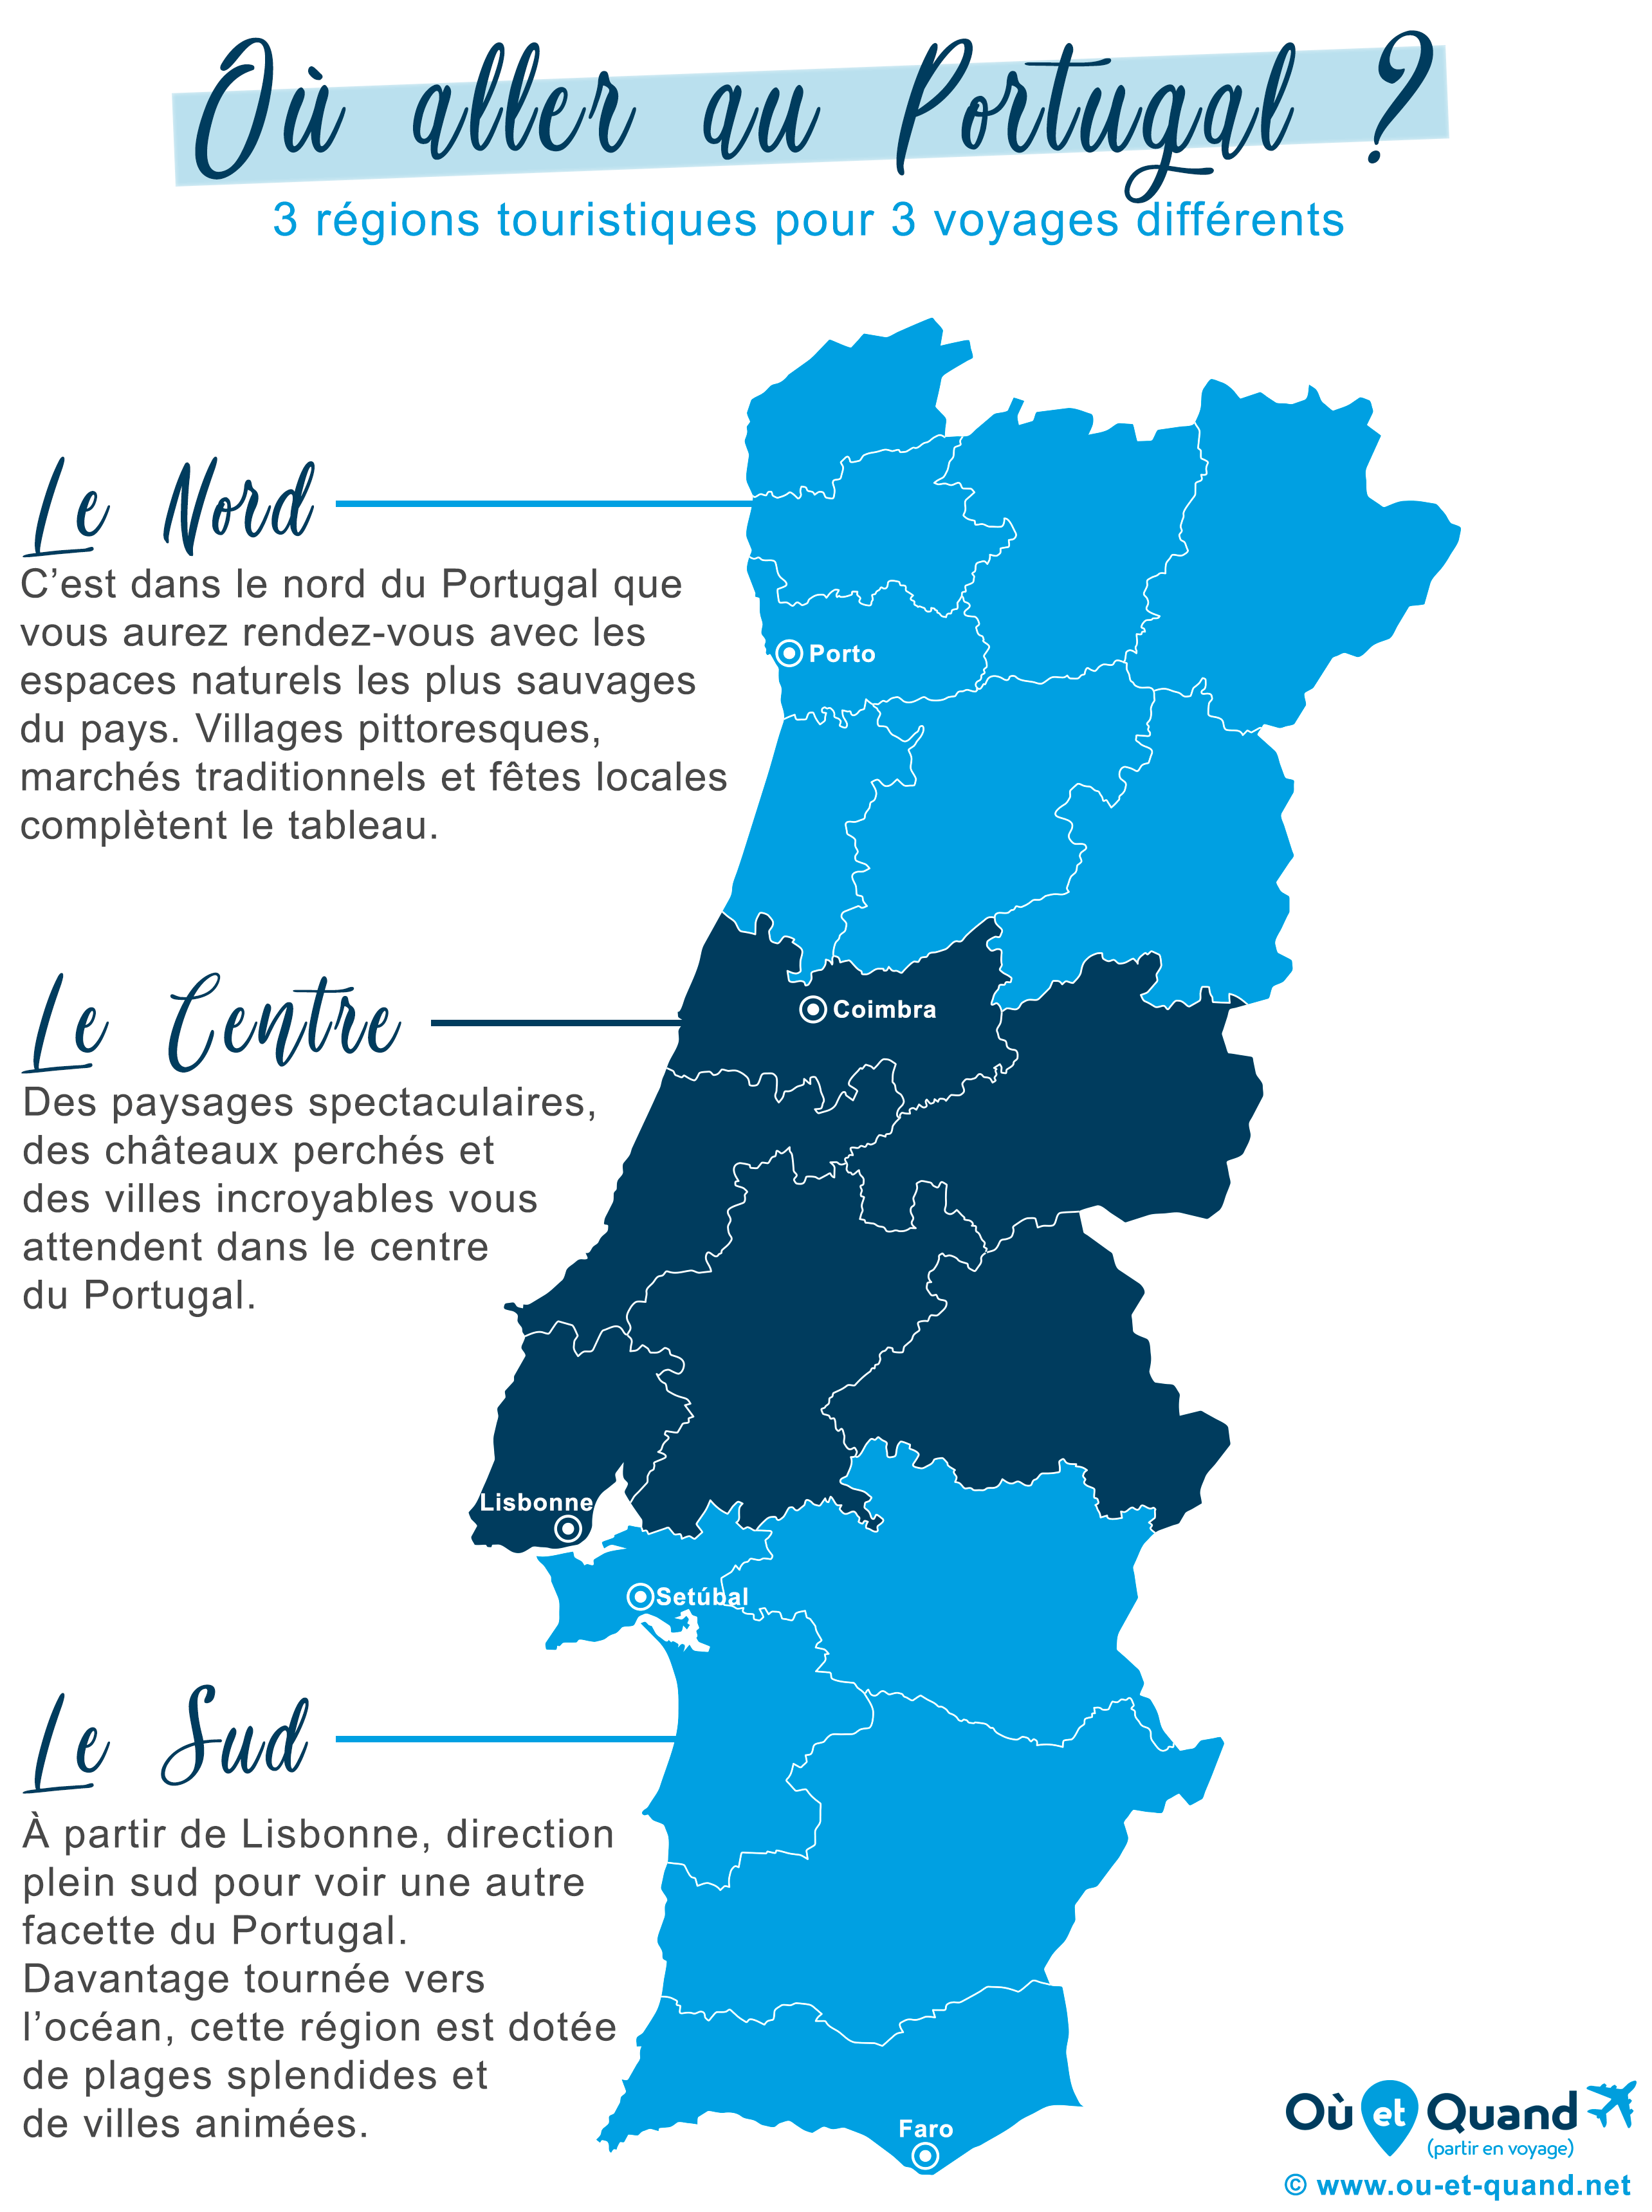 Notre sélection des régions où aller au Portugal